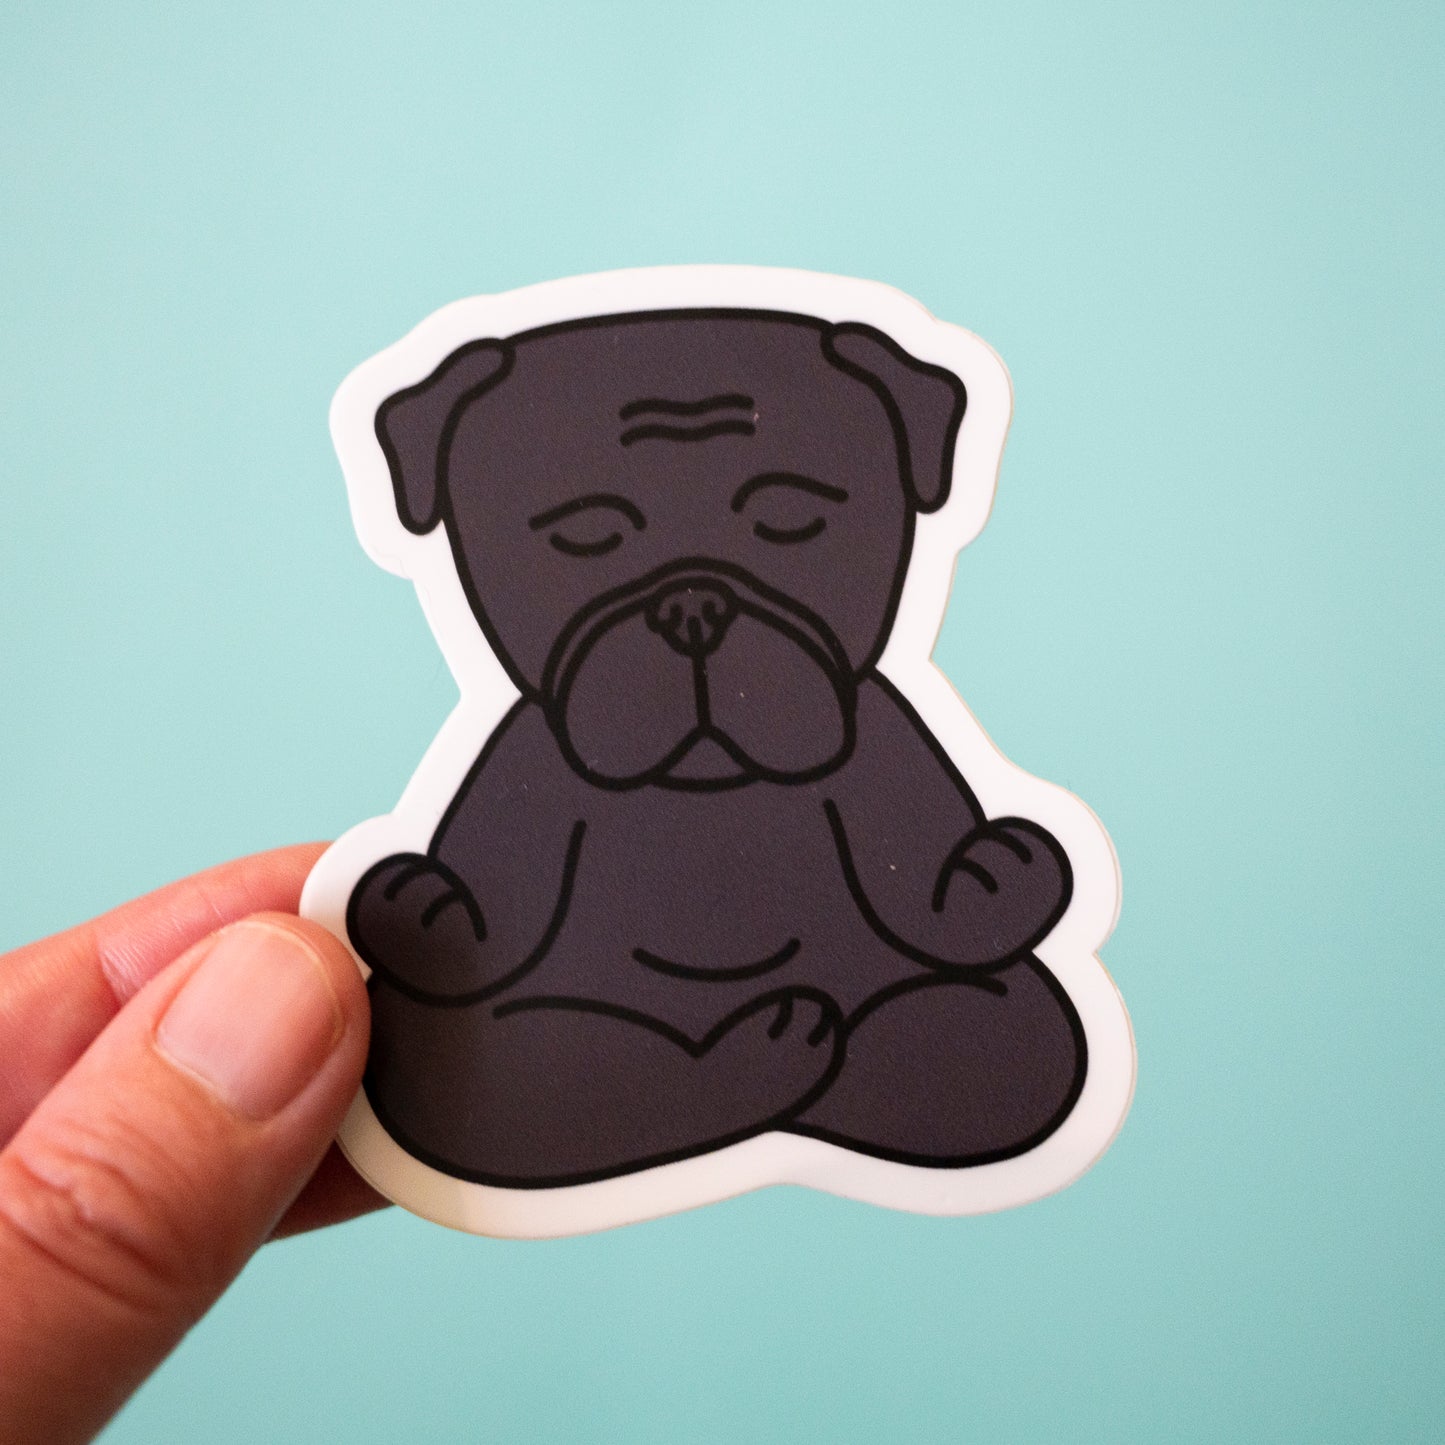 Zen Black Pug Sticker